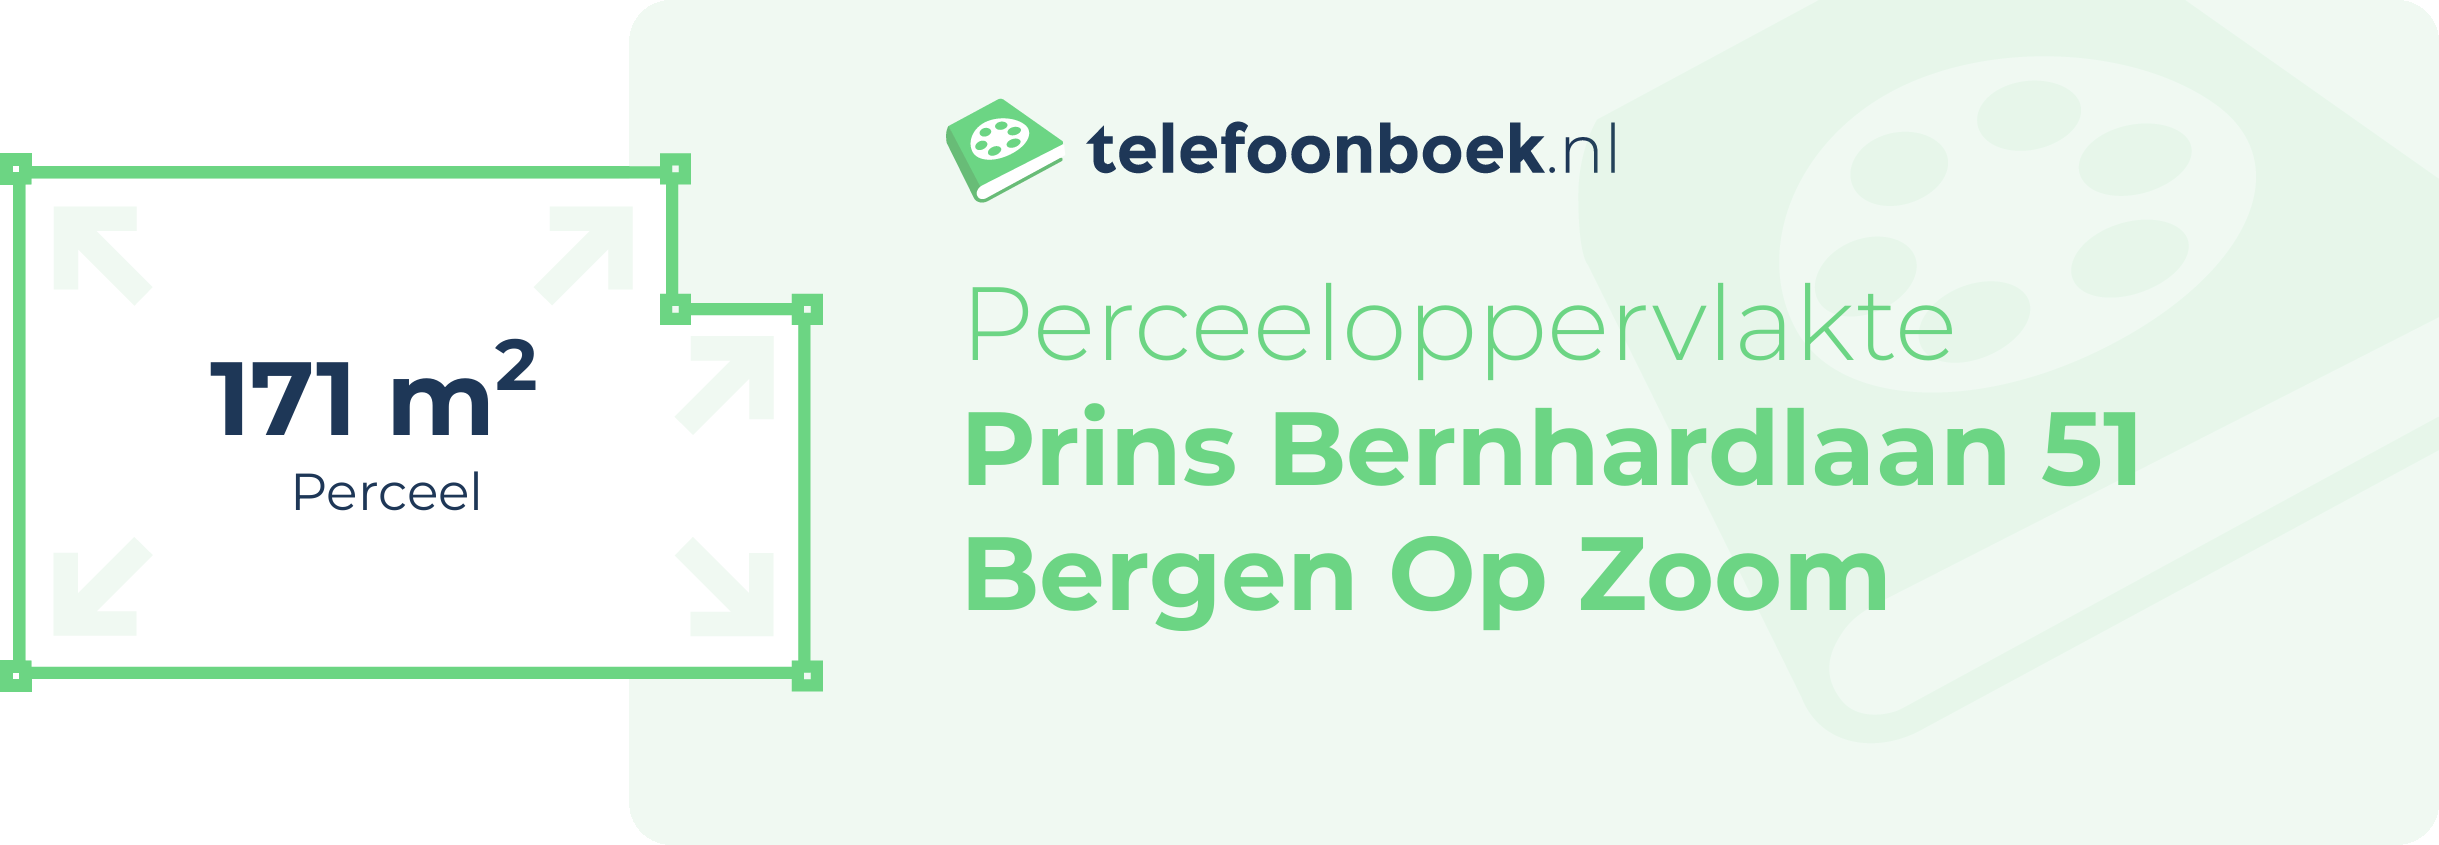 Perceeloppervlakte Prins Bernhardlaan 51 Bergen Op Zoom